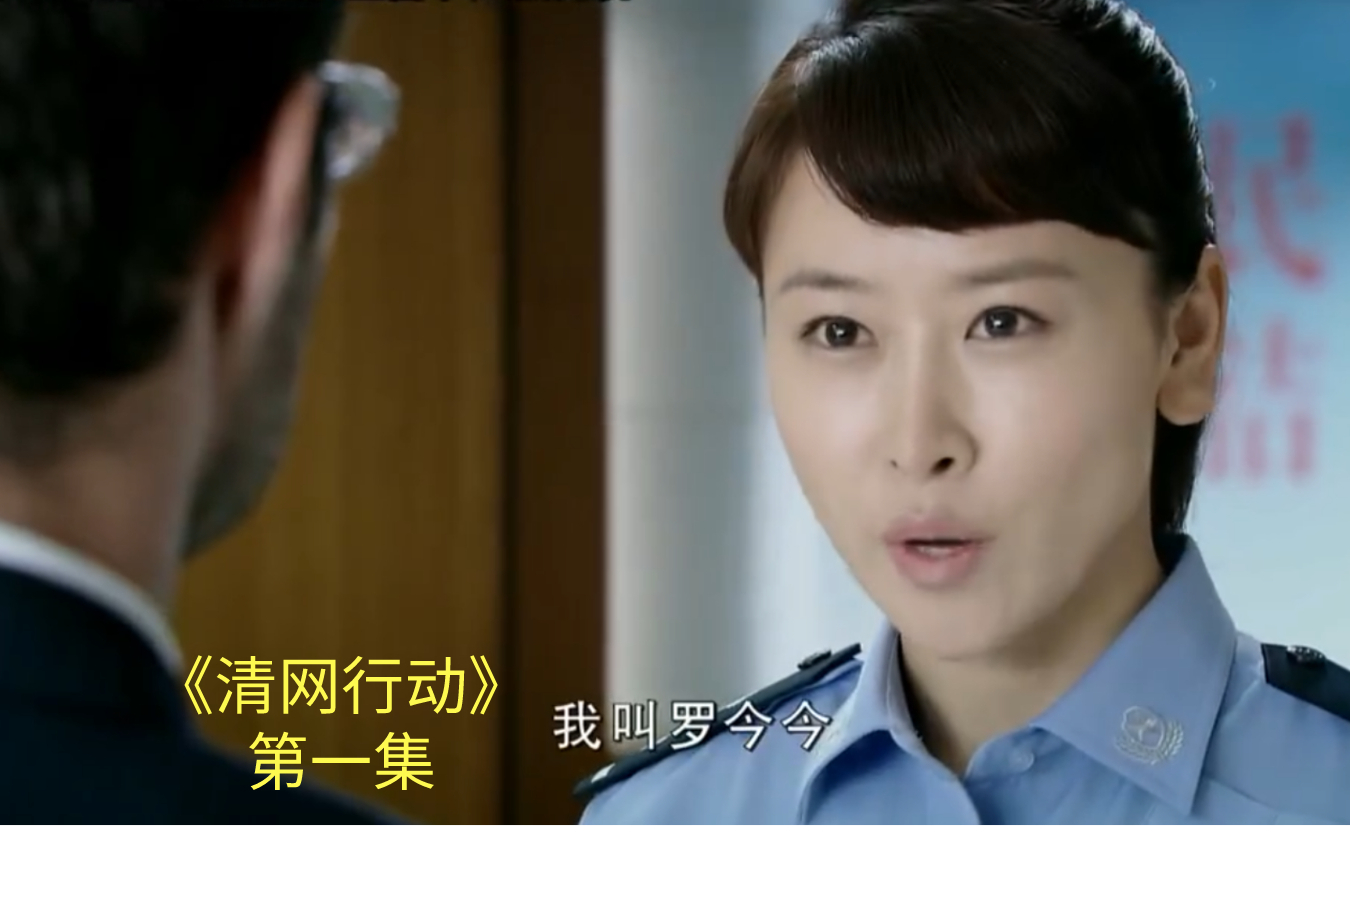 清网行动第1集:罗今今加入警队,冯鸿涛骂她是花瓶,结果真厉害